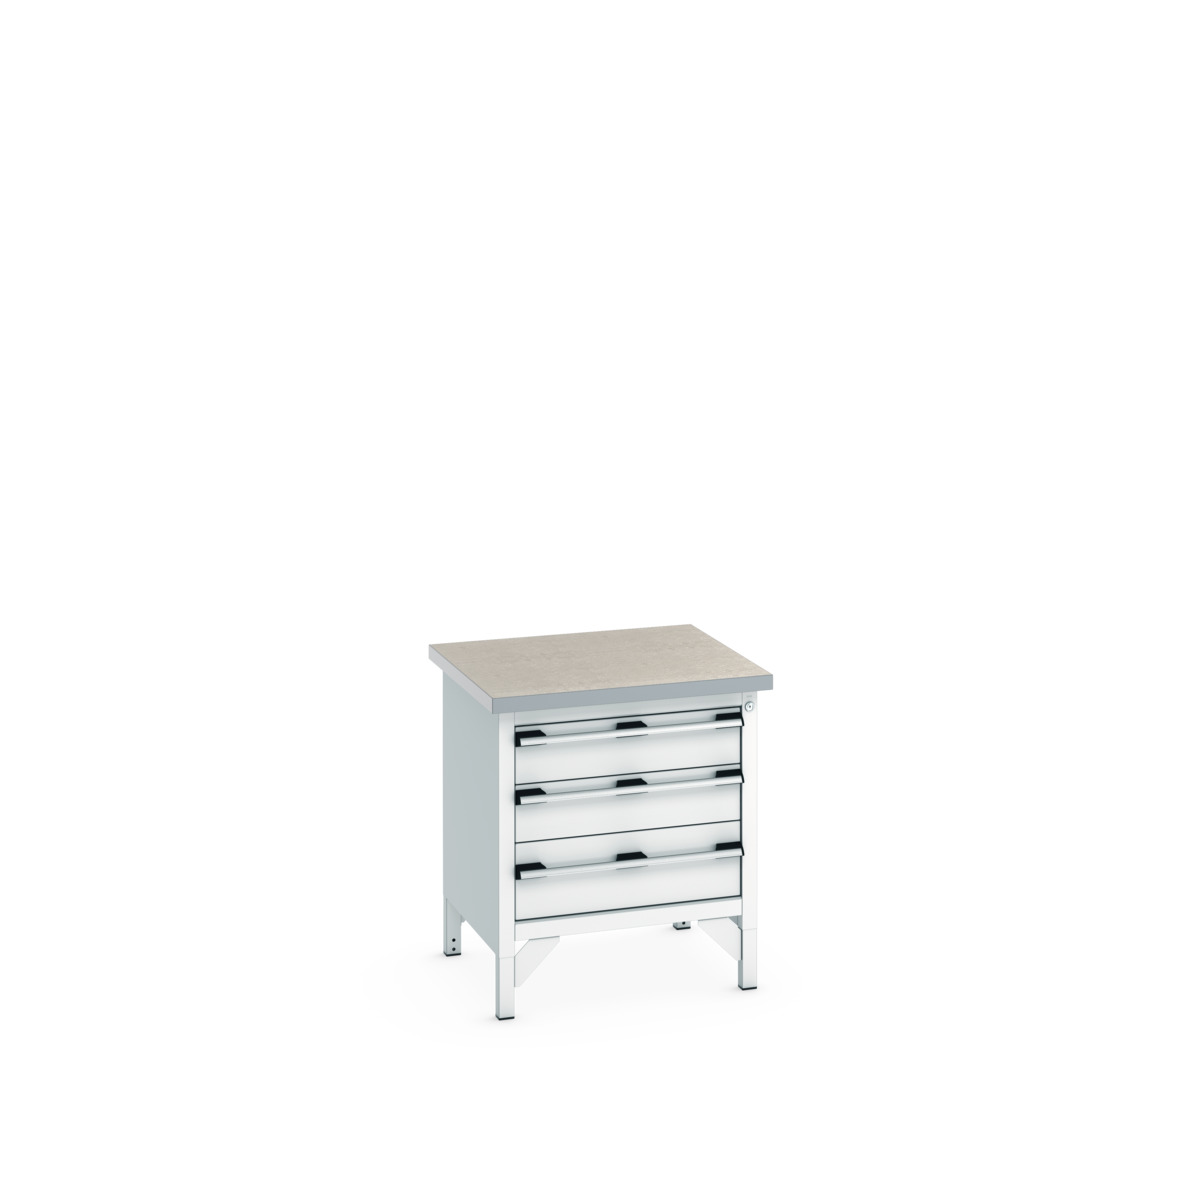 41002012.16V - cubio storage bench (lino)